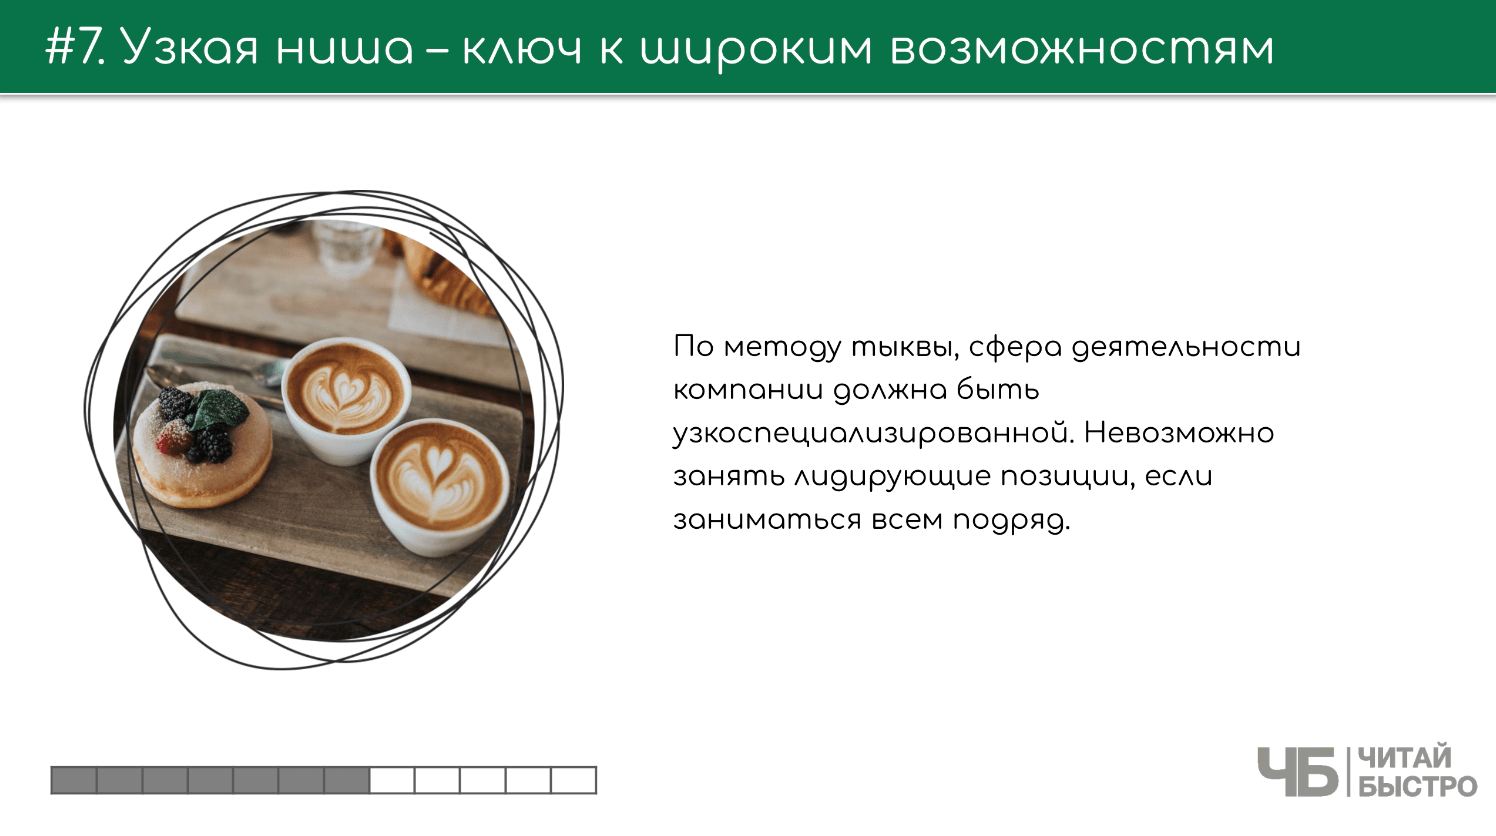 На этом слайде изображен тезис о том, что узкая ниша - это ключ к широким возможностям и иллюстрация кофе и пироженных.